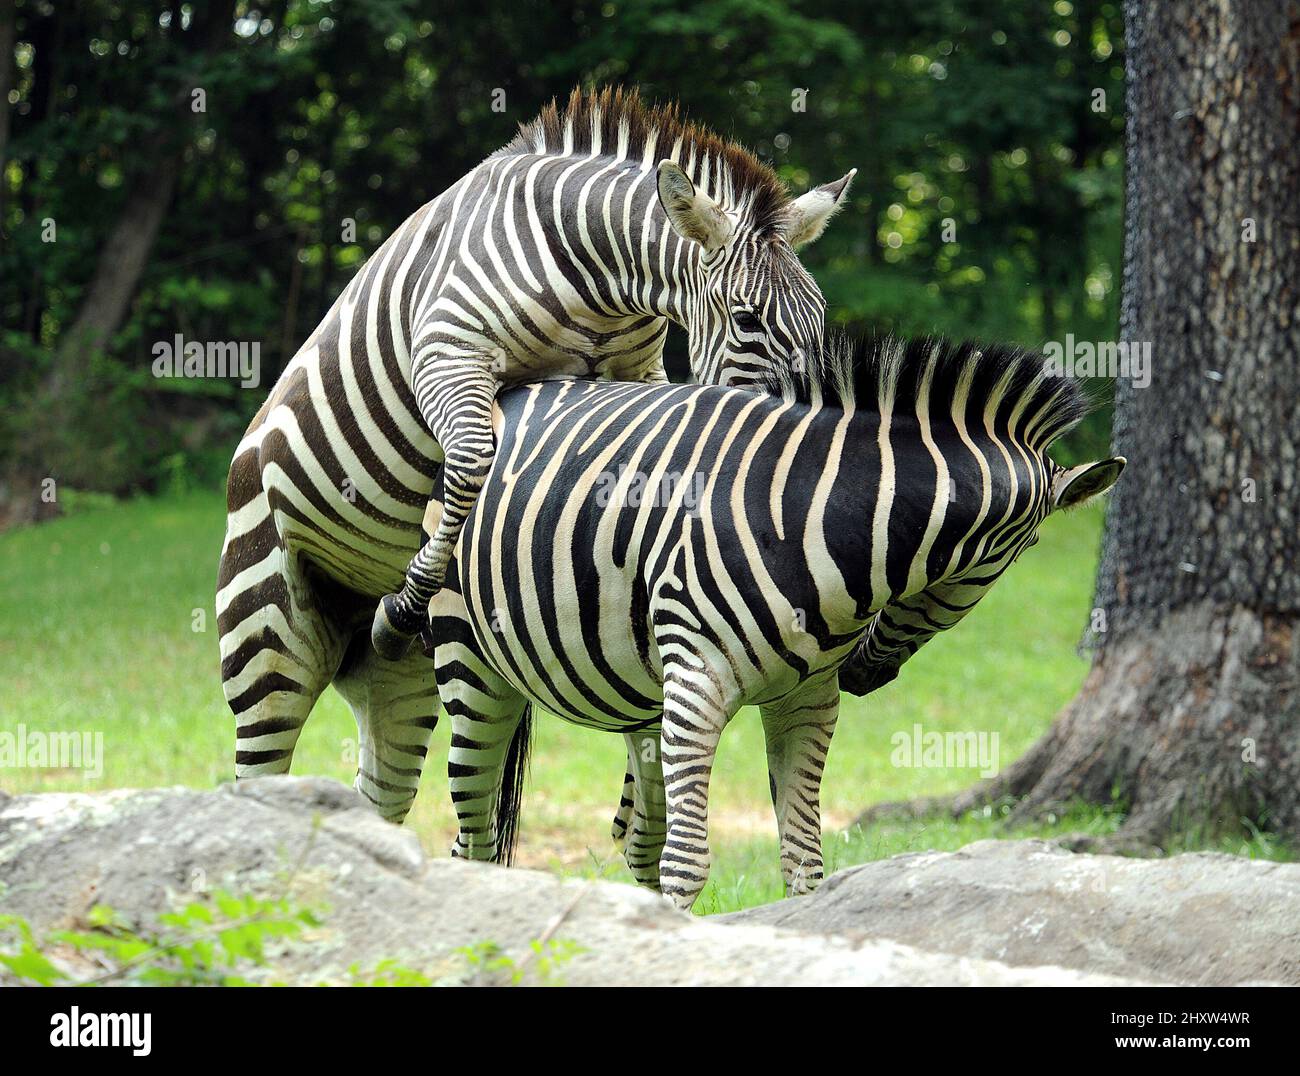 Allgemeine Ansicht der Zebra-Paarung von Grant im North Carolina Zoological Park in Asheboro, USA. Stockfoto